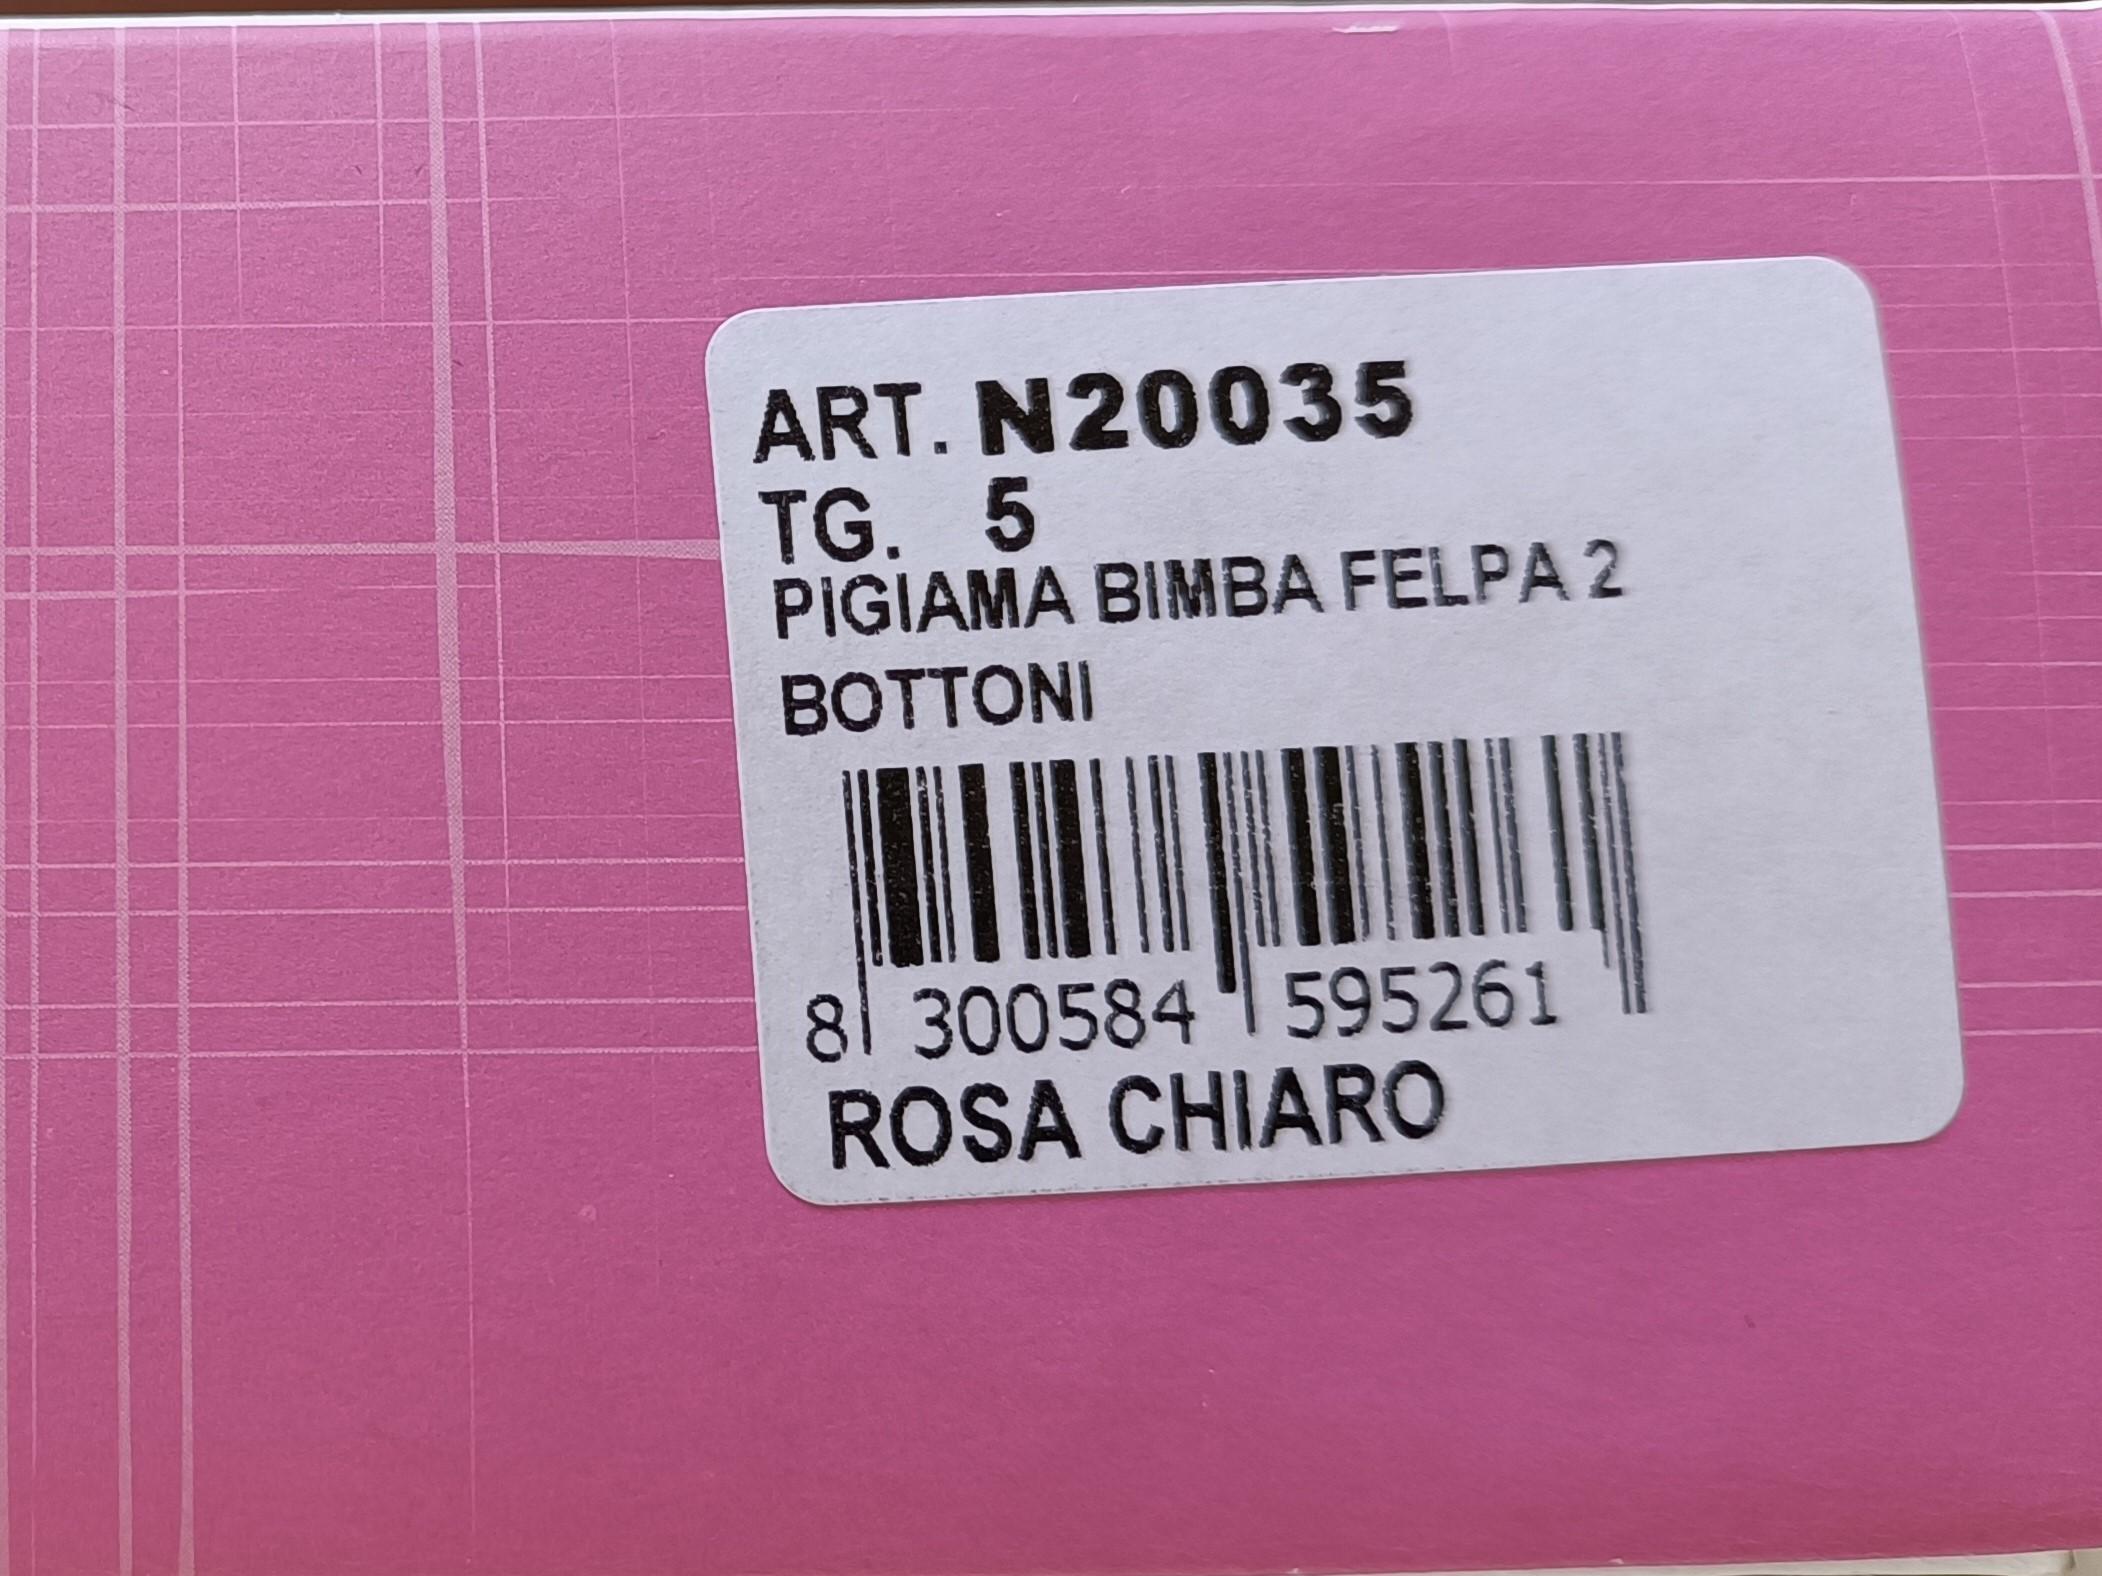 PIGIAMA BIMBA FELPATO 2 BOTTONI marca GARY colore ROSA CHIARO